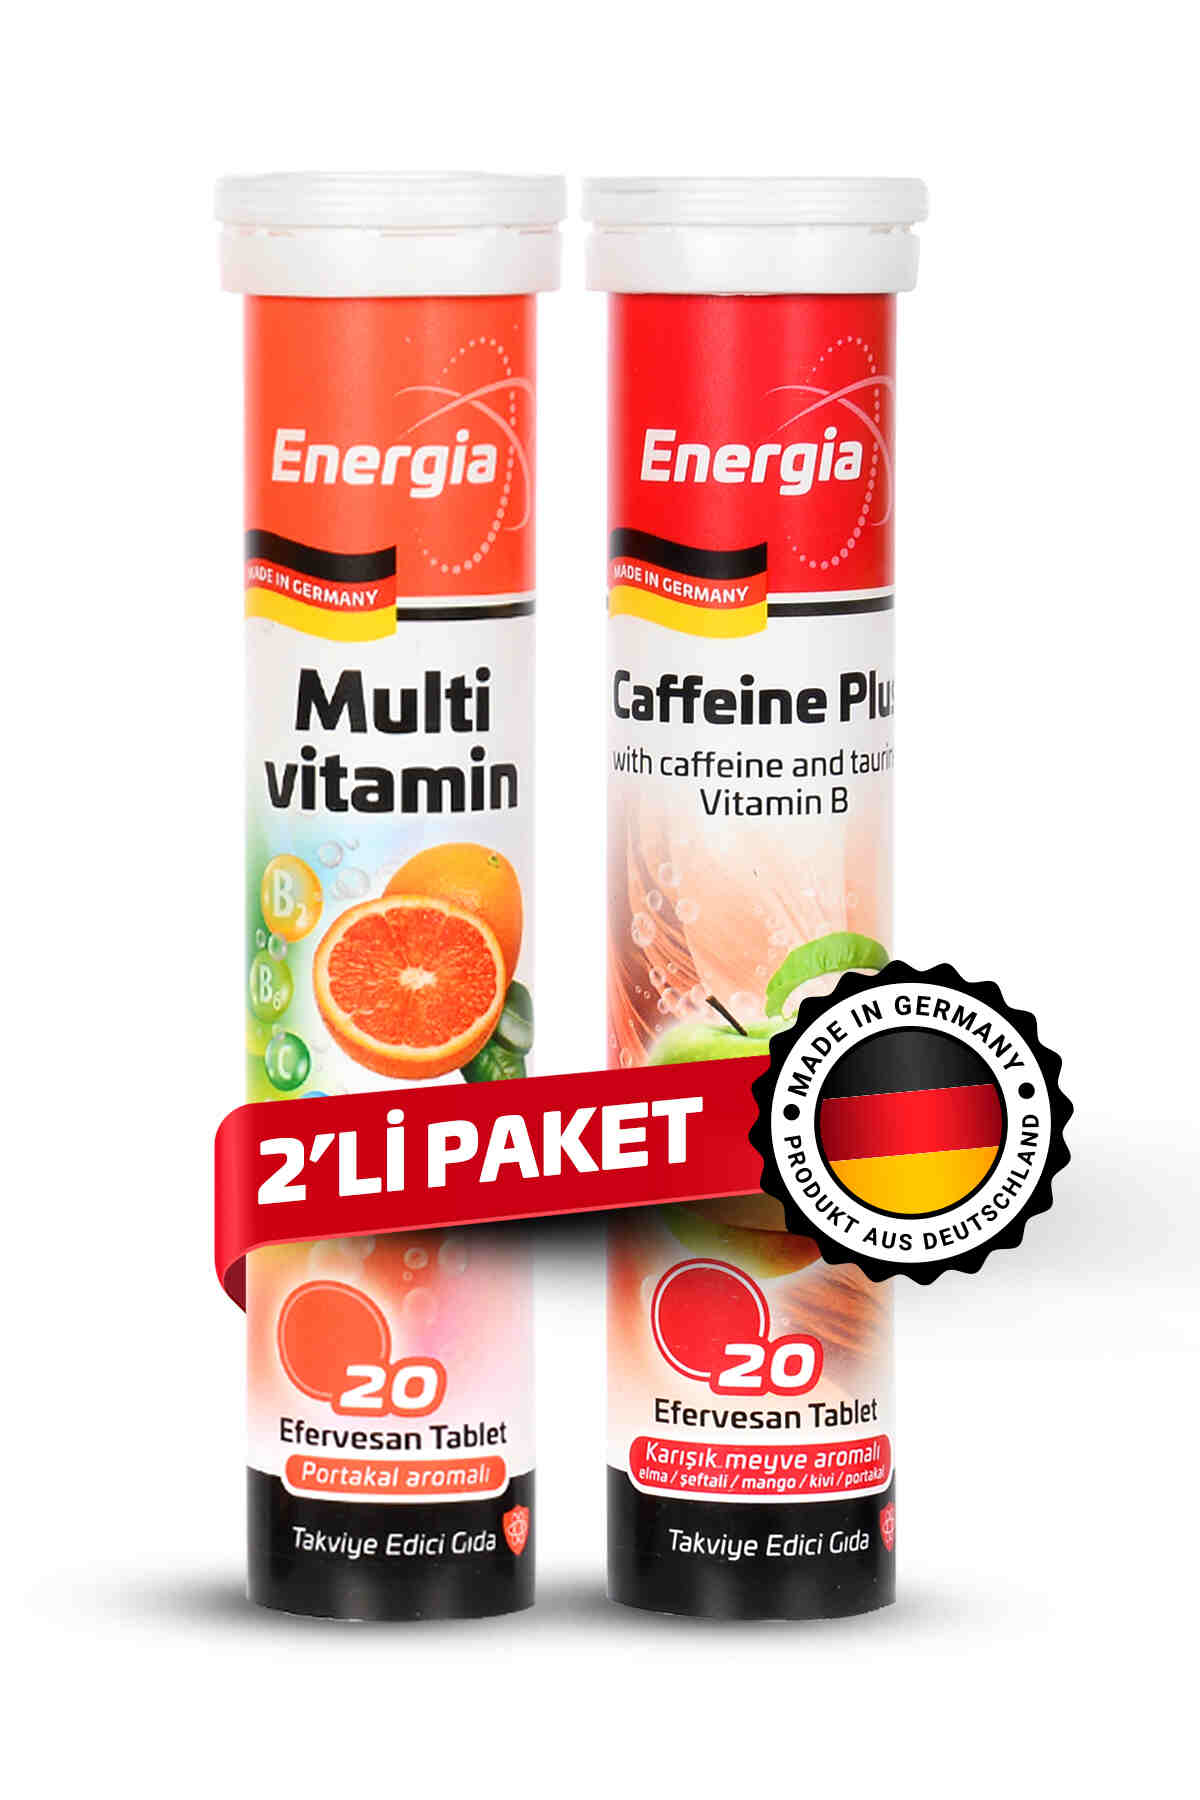 Energia® Multivitamin + Caffeine Plus Efervesan Tablet Takviye Edici Gıda